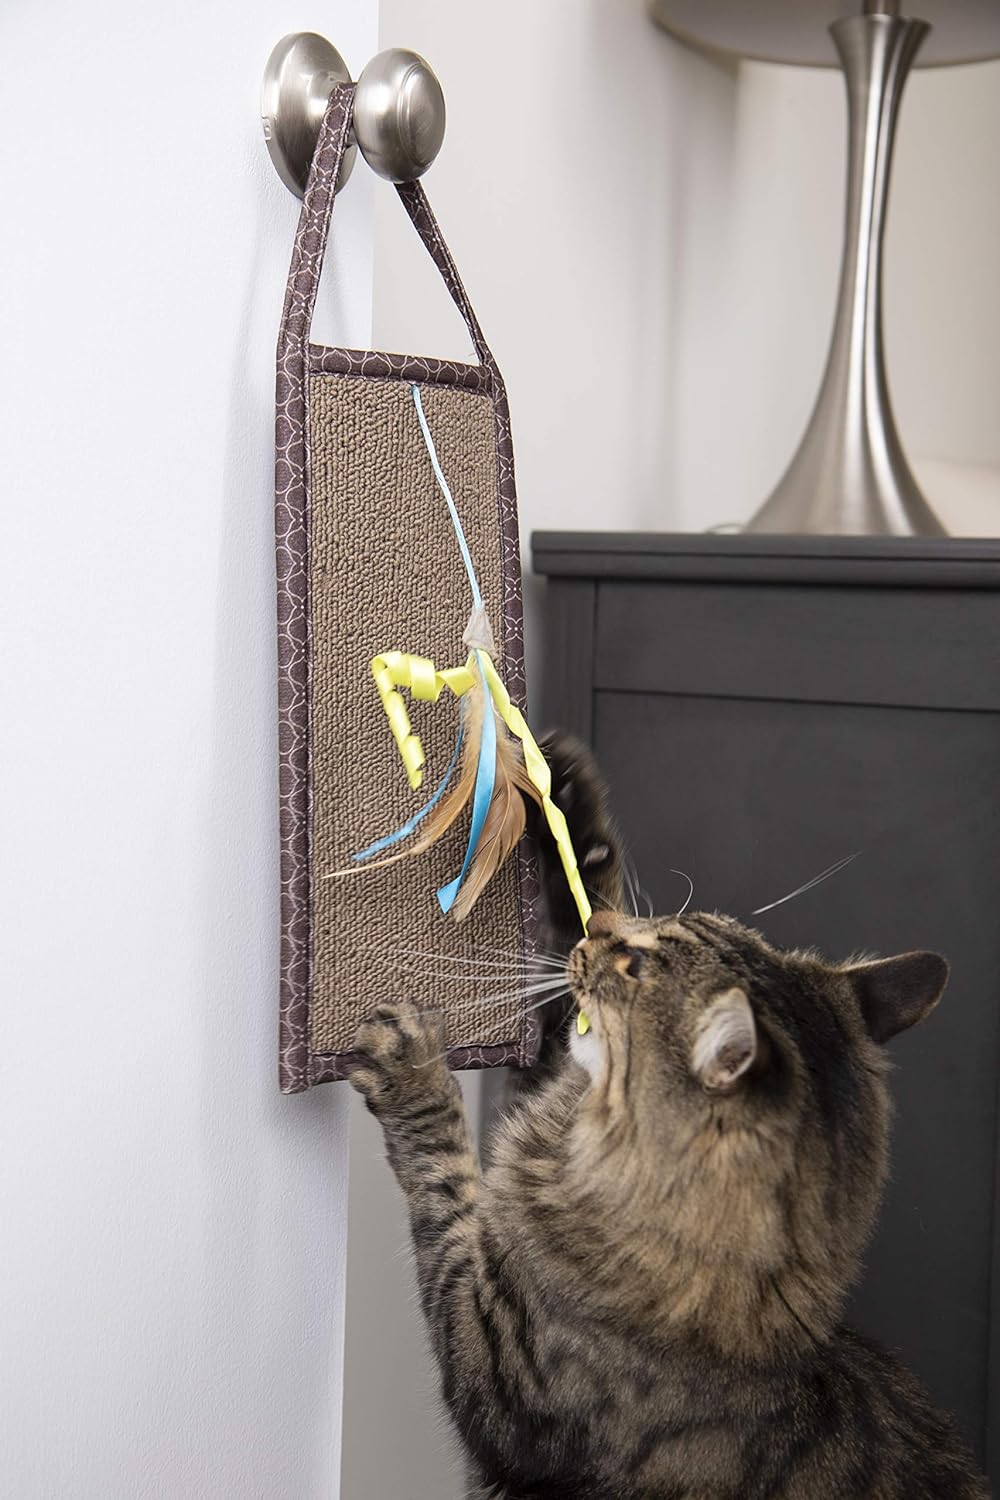 Smartykat® Carpet Relief™ Hanging Cat Scratcher With Catnip